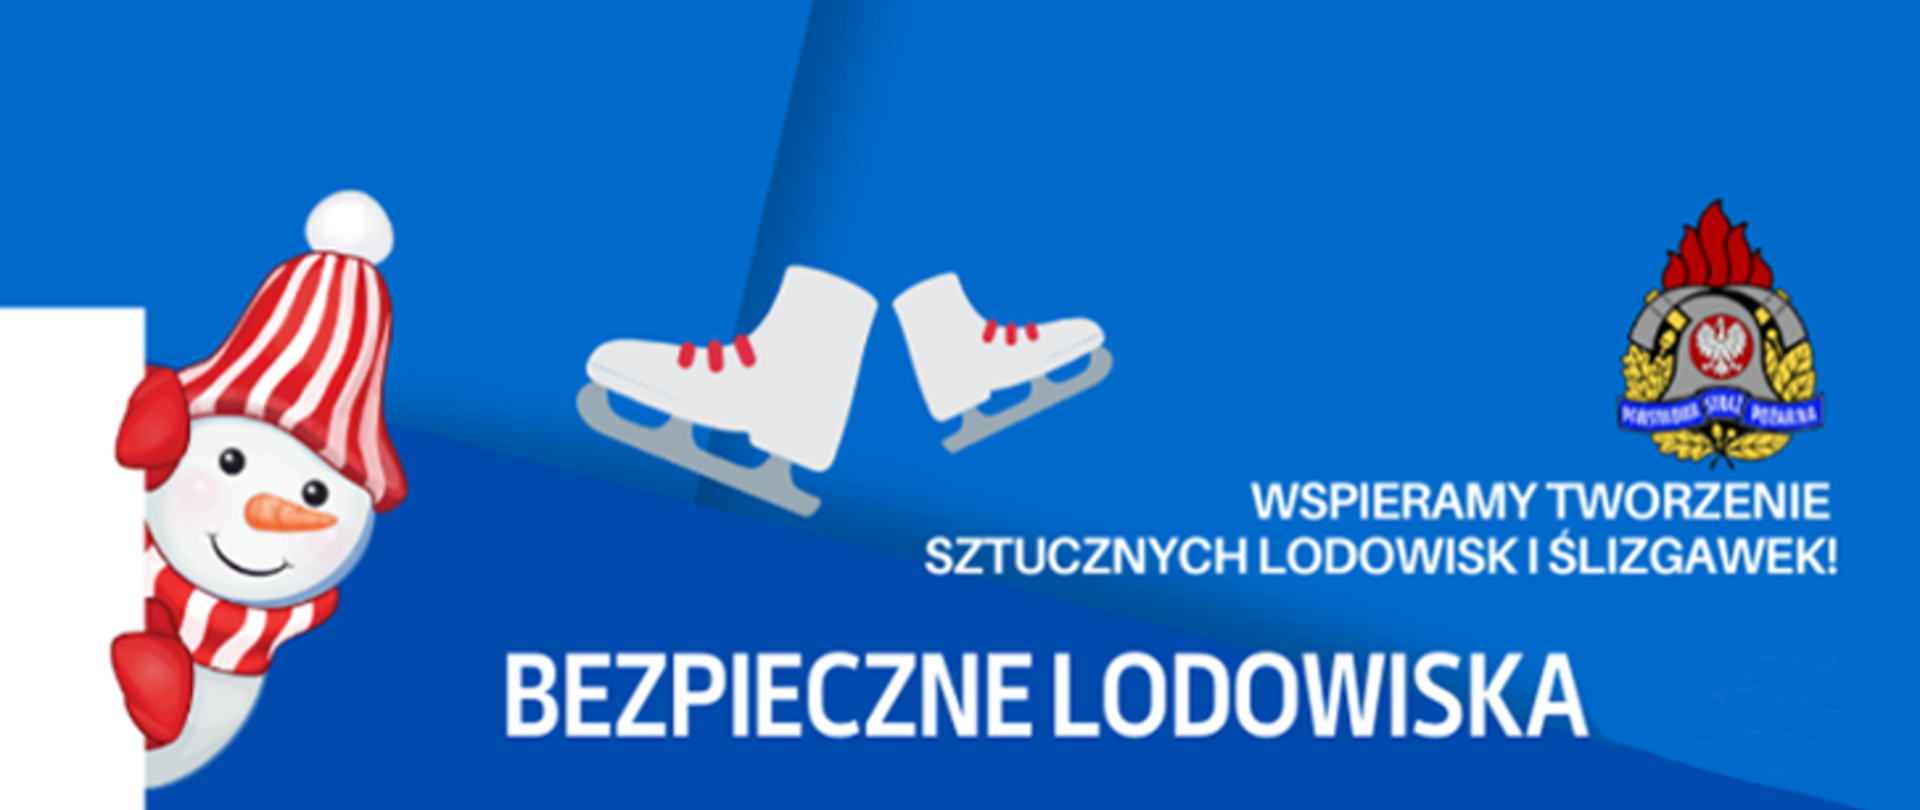 Bezpieczne lodowiska 2023 - logo akcji - niebieskie tło, na nim logo PSP, białe łyżwy z czerwonymi sznurówkami i bałwan z biało-czerwoną czapką i szalikiem oraz czerwonymi rękawicami